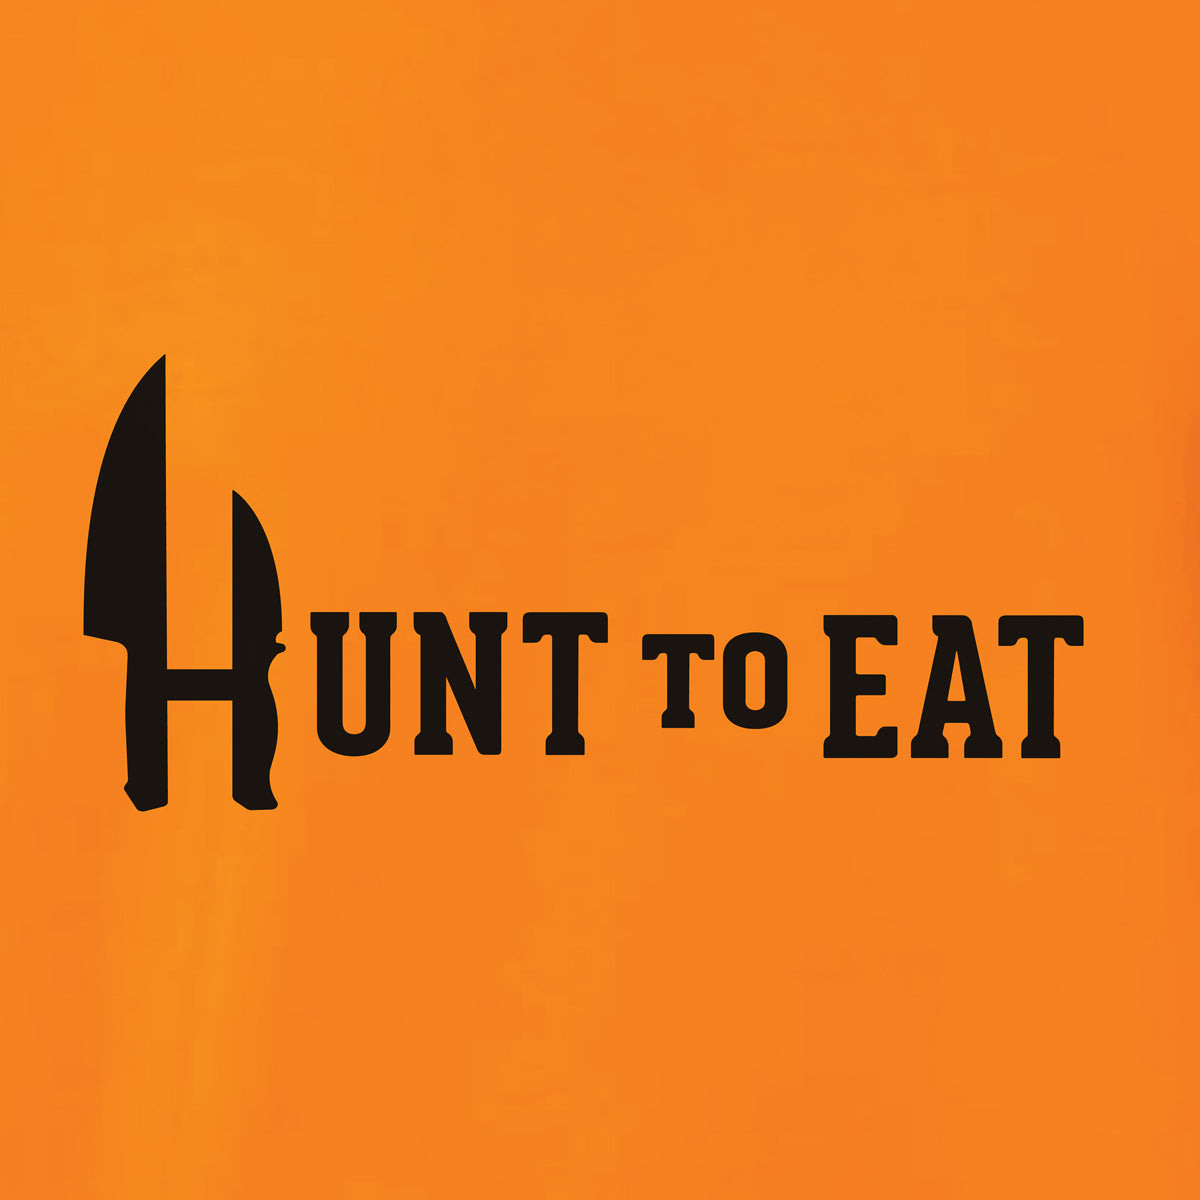 Hunt To Eat Logo Wear Blaze Orange Hooded Sweatshirt. 